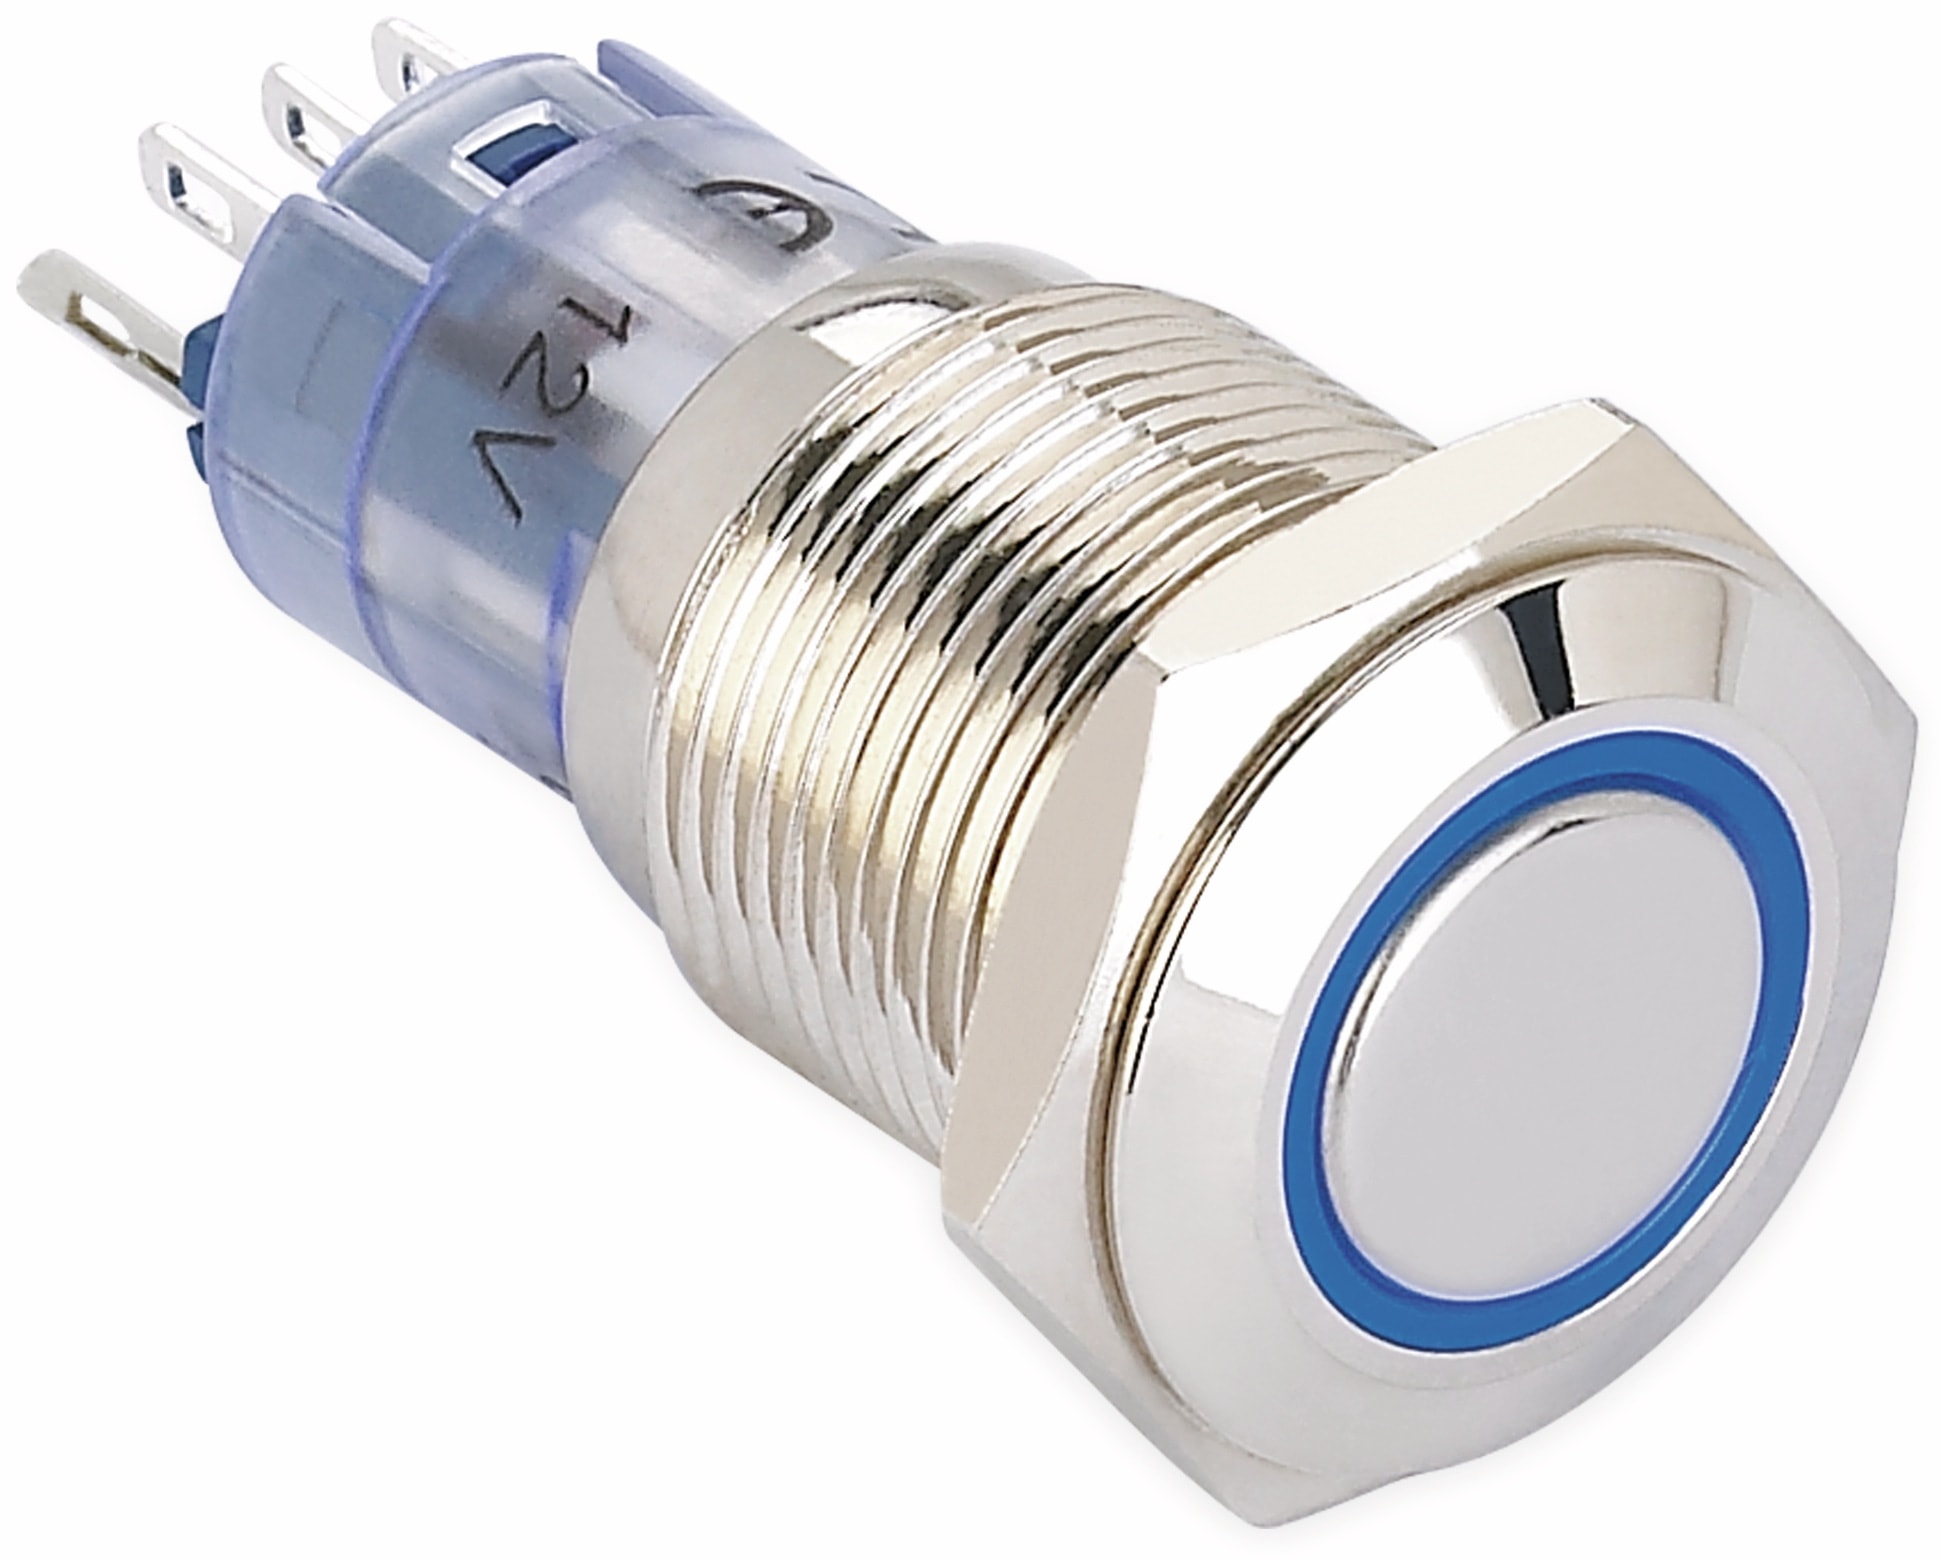 ONPOW Schalter, 24 V/DC, 1x Off/On, Beleuchtung weiß, Lötanschluss, flach rund, Messing 16 mm